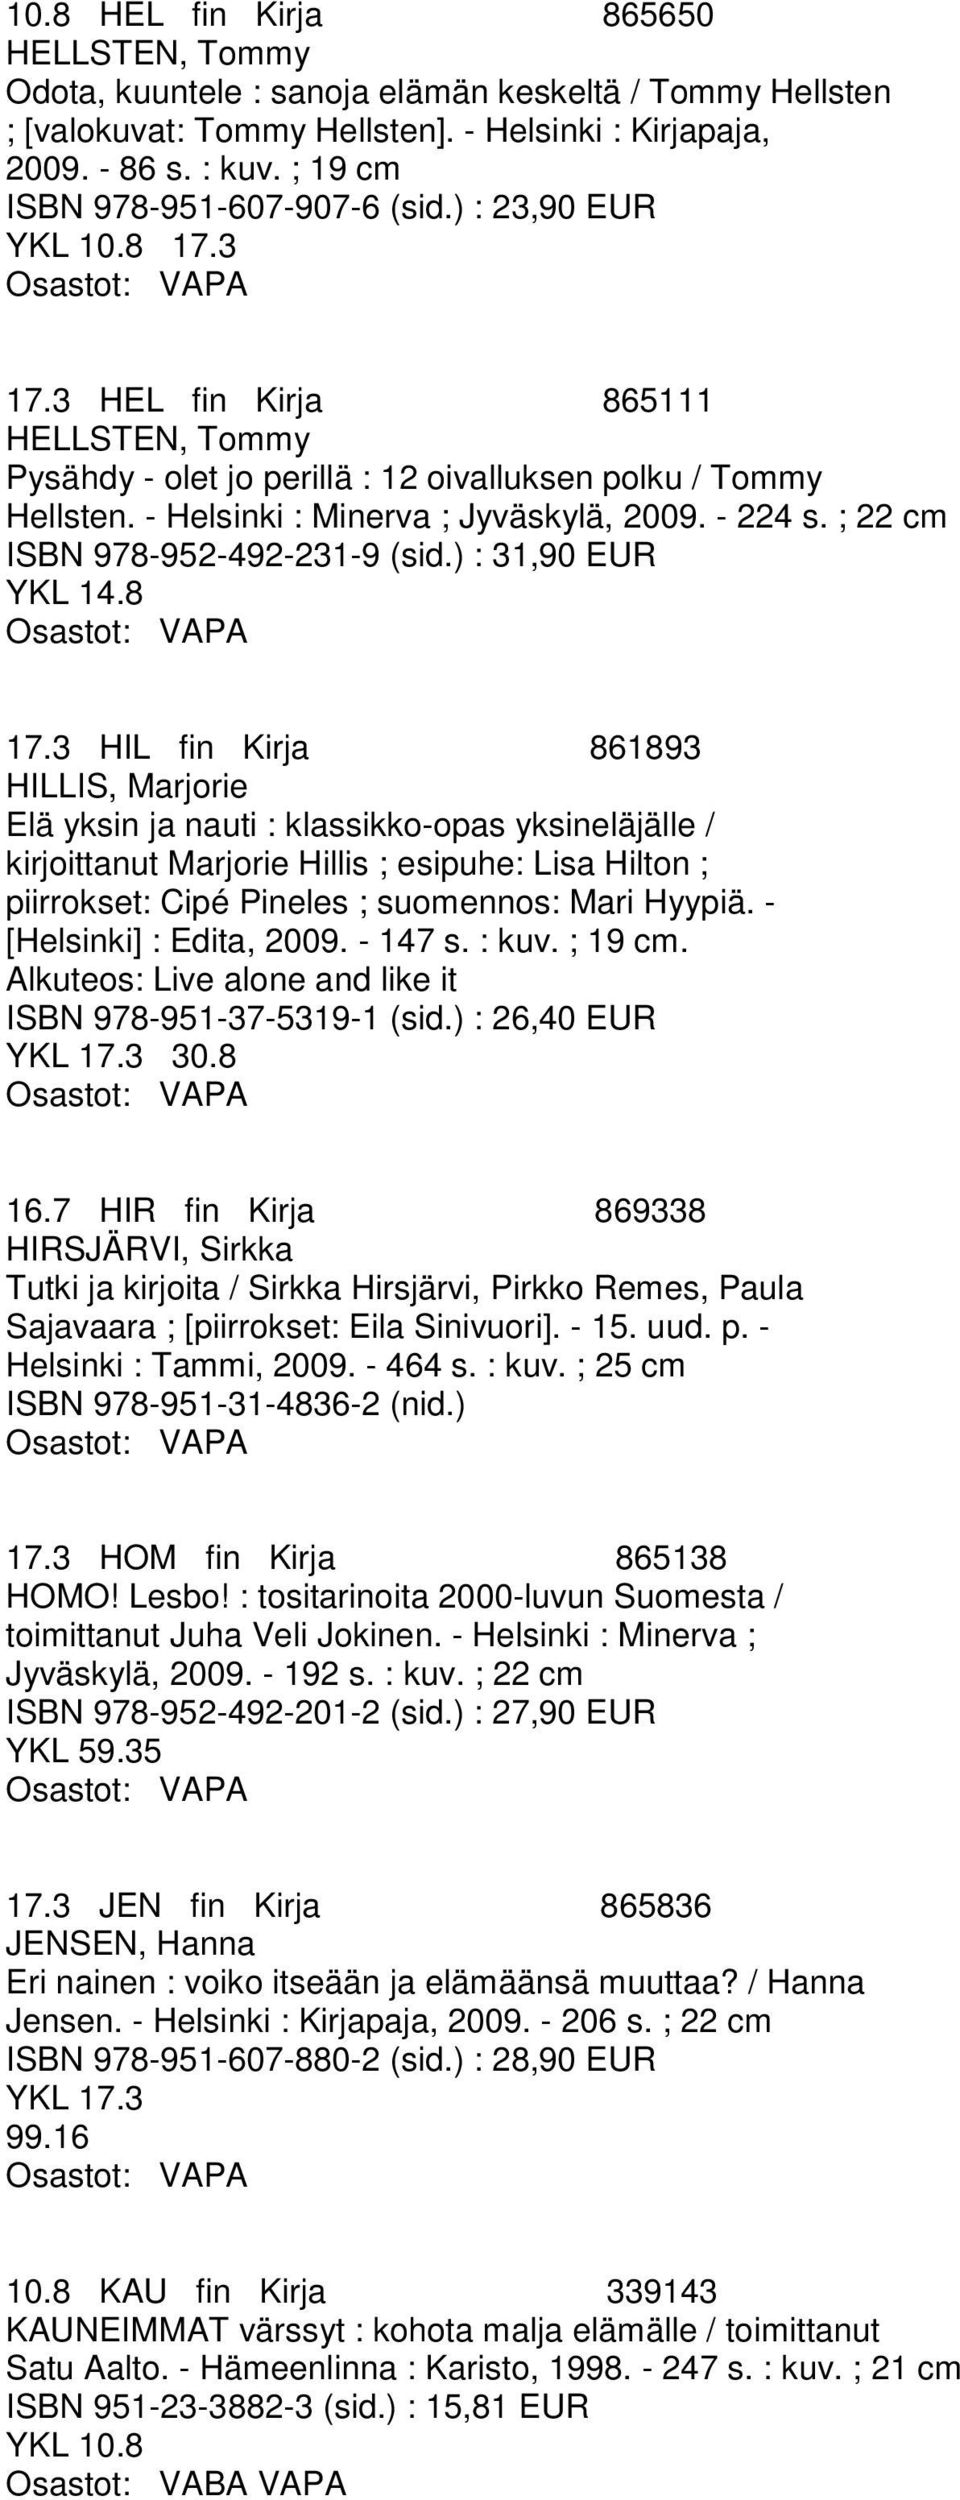 - Helsinki : Minerva ; Jyväskylä, 2009. - 224 s. ; 22 cm ISBN 978-952-492-231-9 (sid.) : 31,90 EUR YKL 14.8 17.